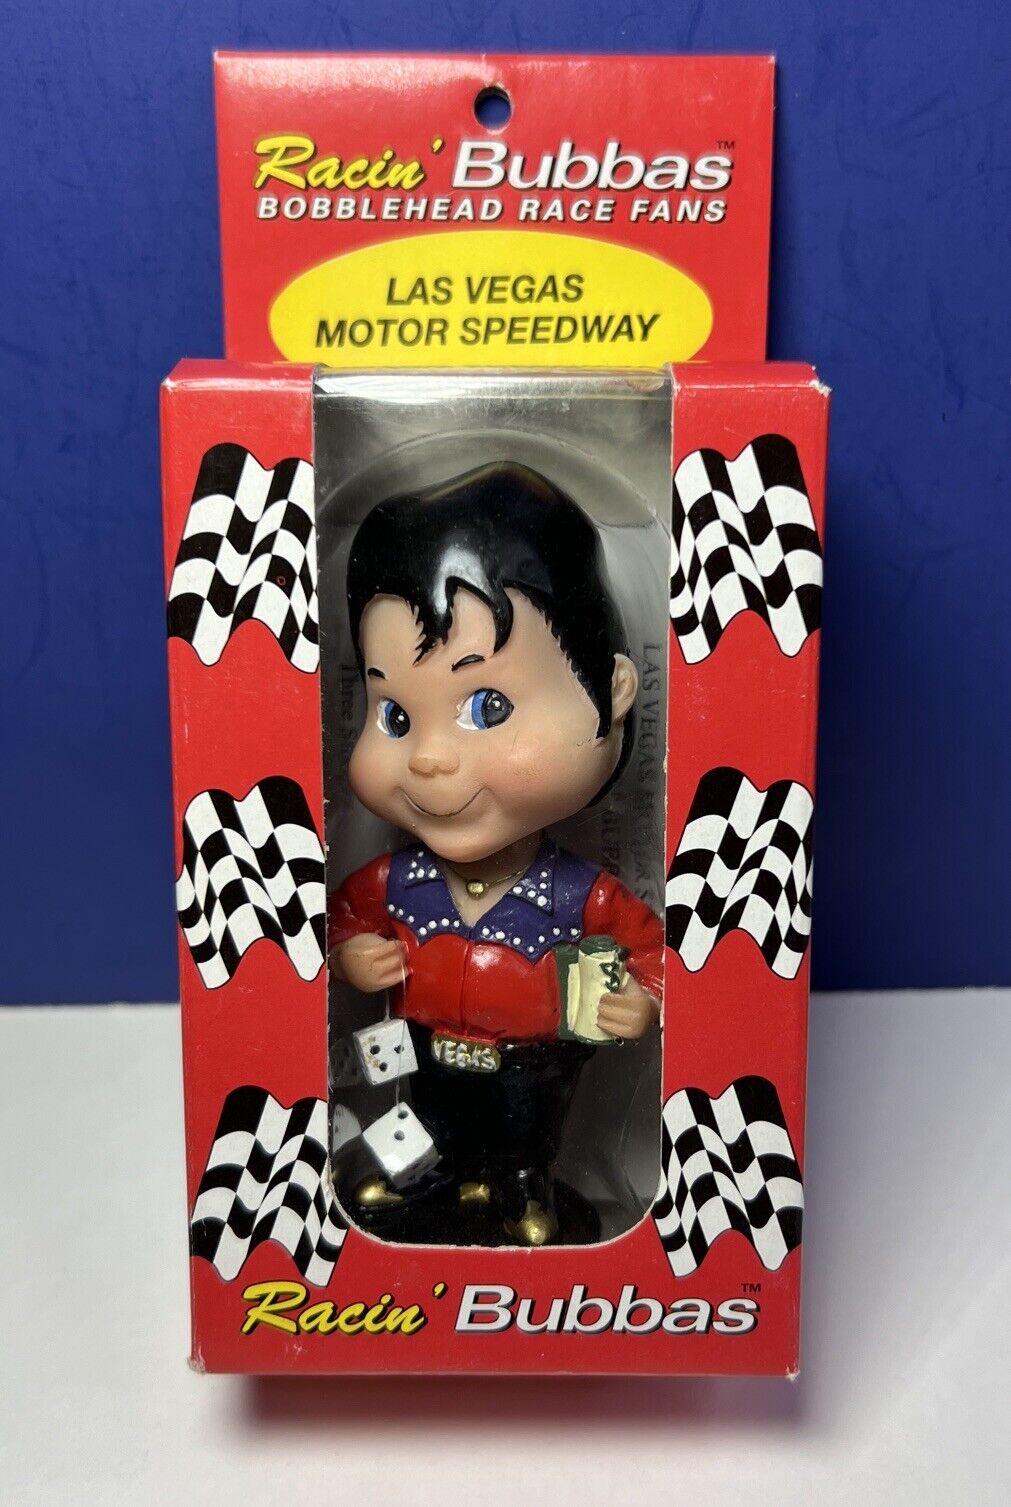 Vintage Racin' Bubbas 'Las Vegas Motor Speedway' Bobblehead Race Fans in Box